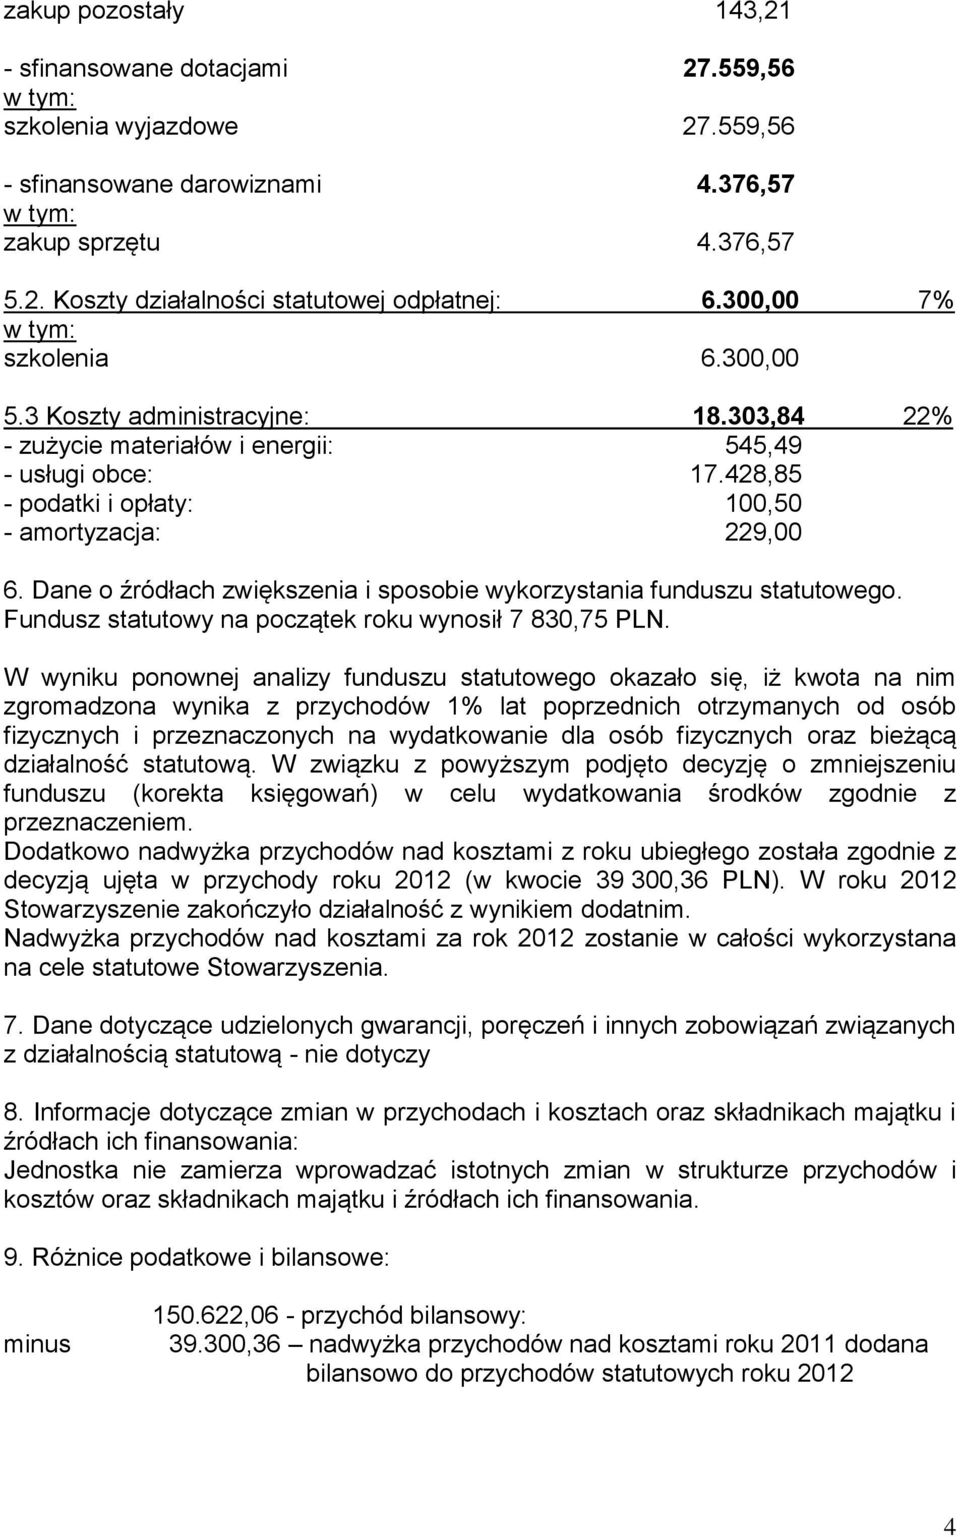 Dane o źródłach zwiększenia i sposobie wykorzystania funduszu statutowego. Fundusz statutowy na początek roku wynosił 7 830,75 PLN.